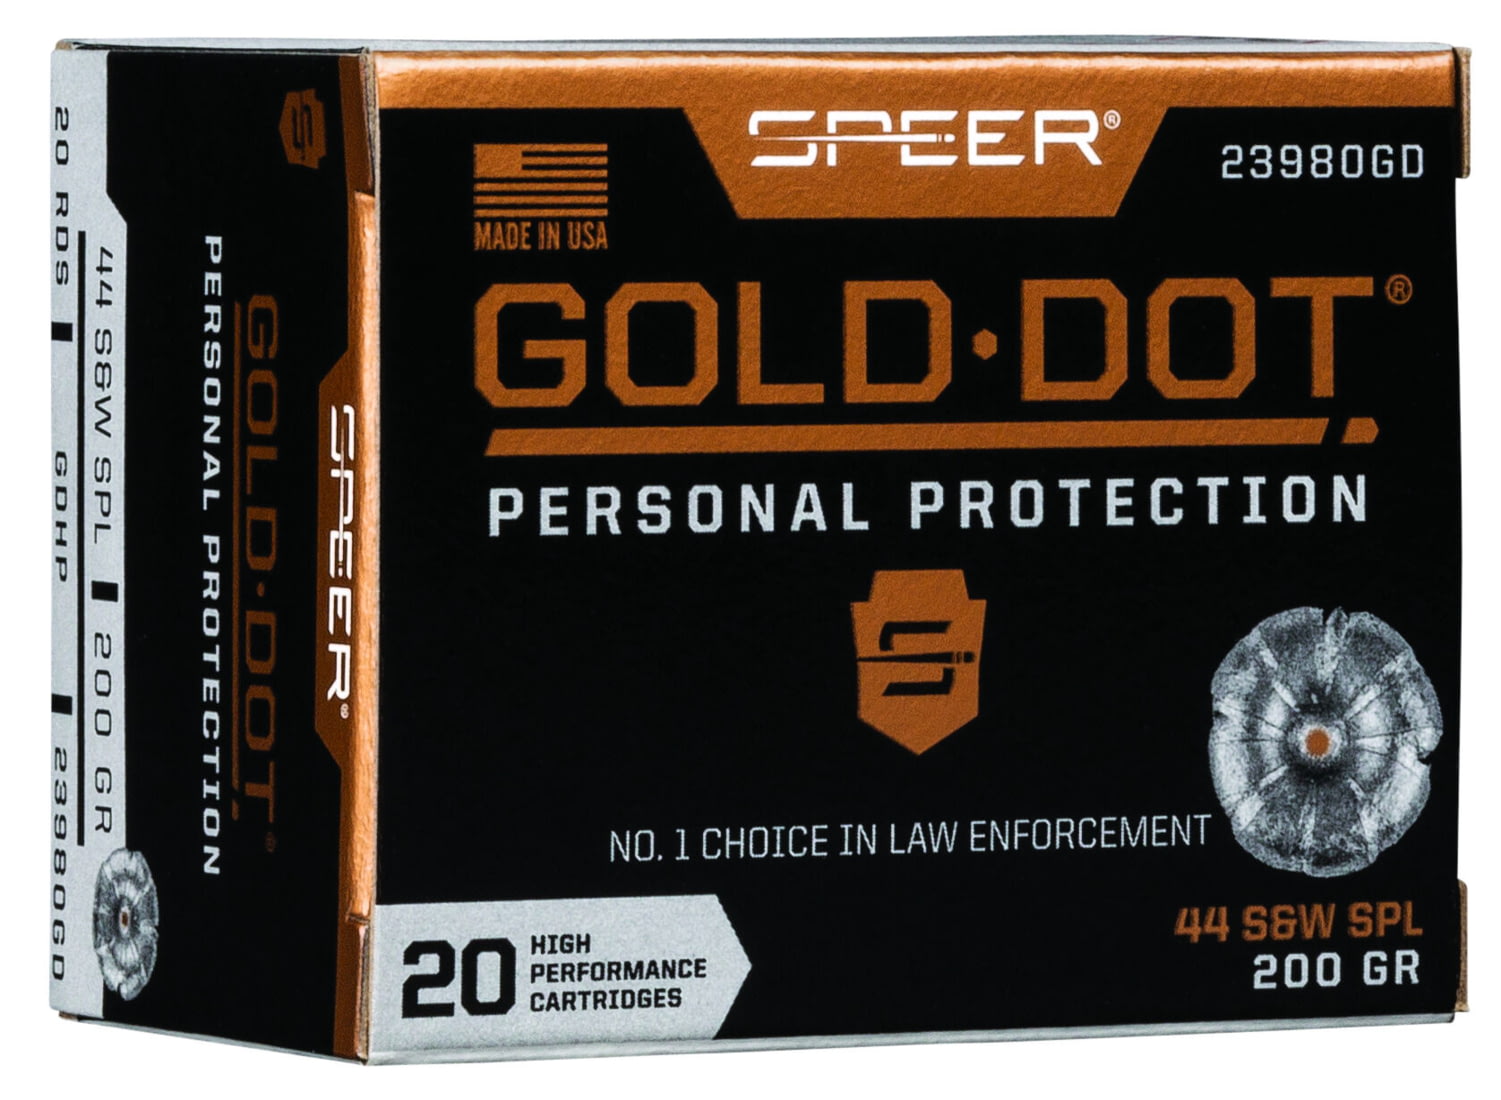 Speer Gold Dot .44 Special 200 grain Gold Dot Hollow Point Centerfire Pistol Ammunition